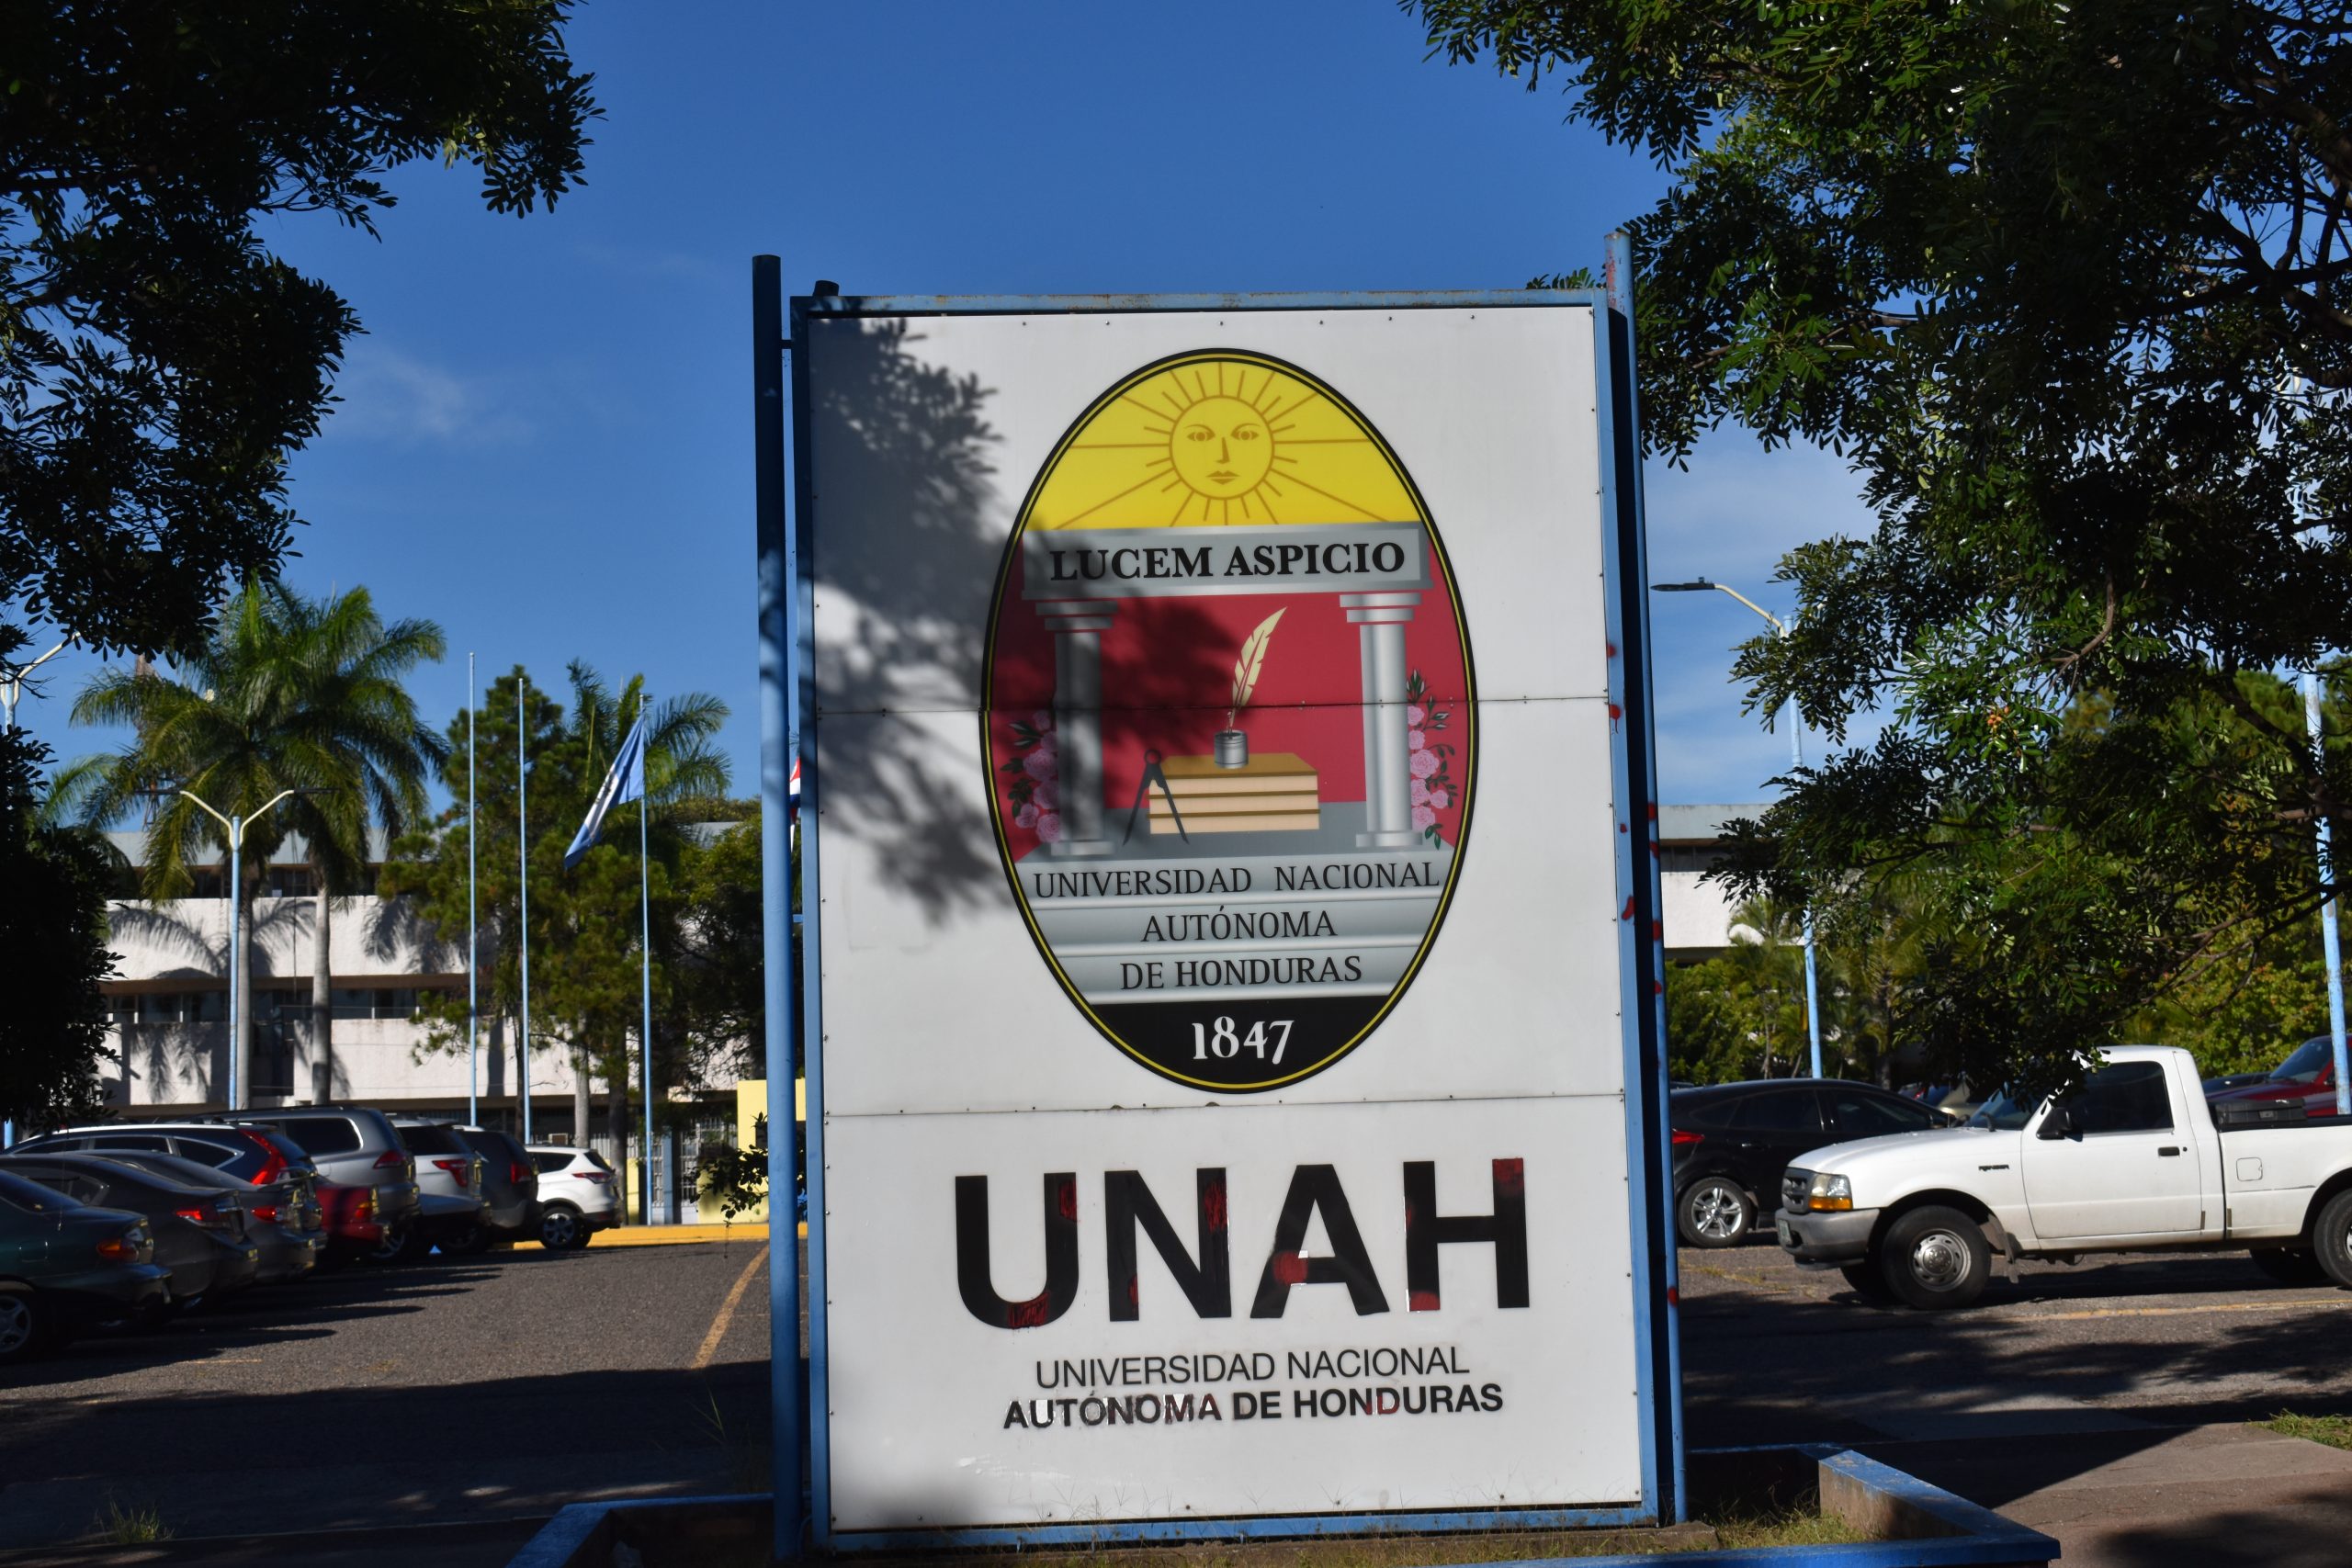 Entre lunes y martes de la próxima semana se elegiría al nuevo rector de la UNAH